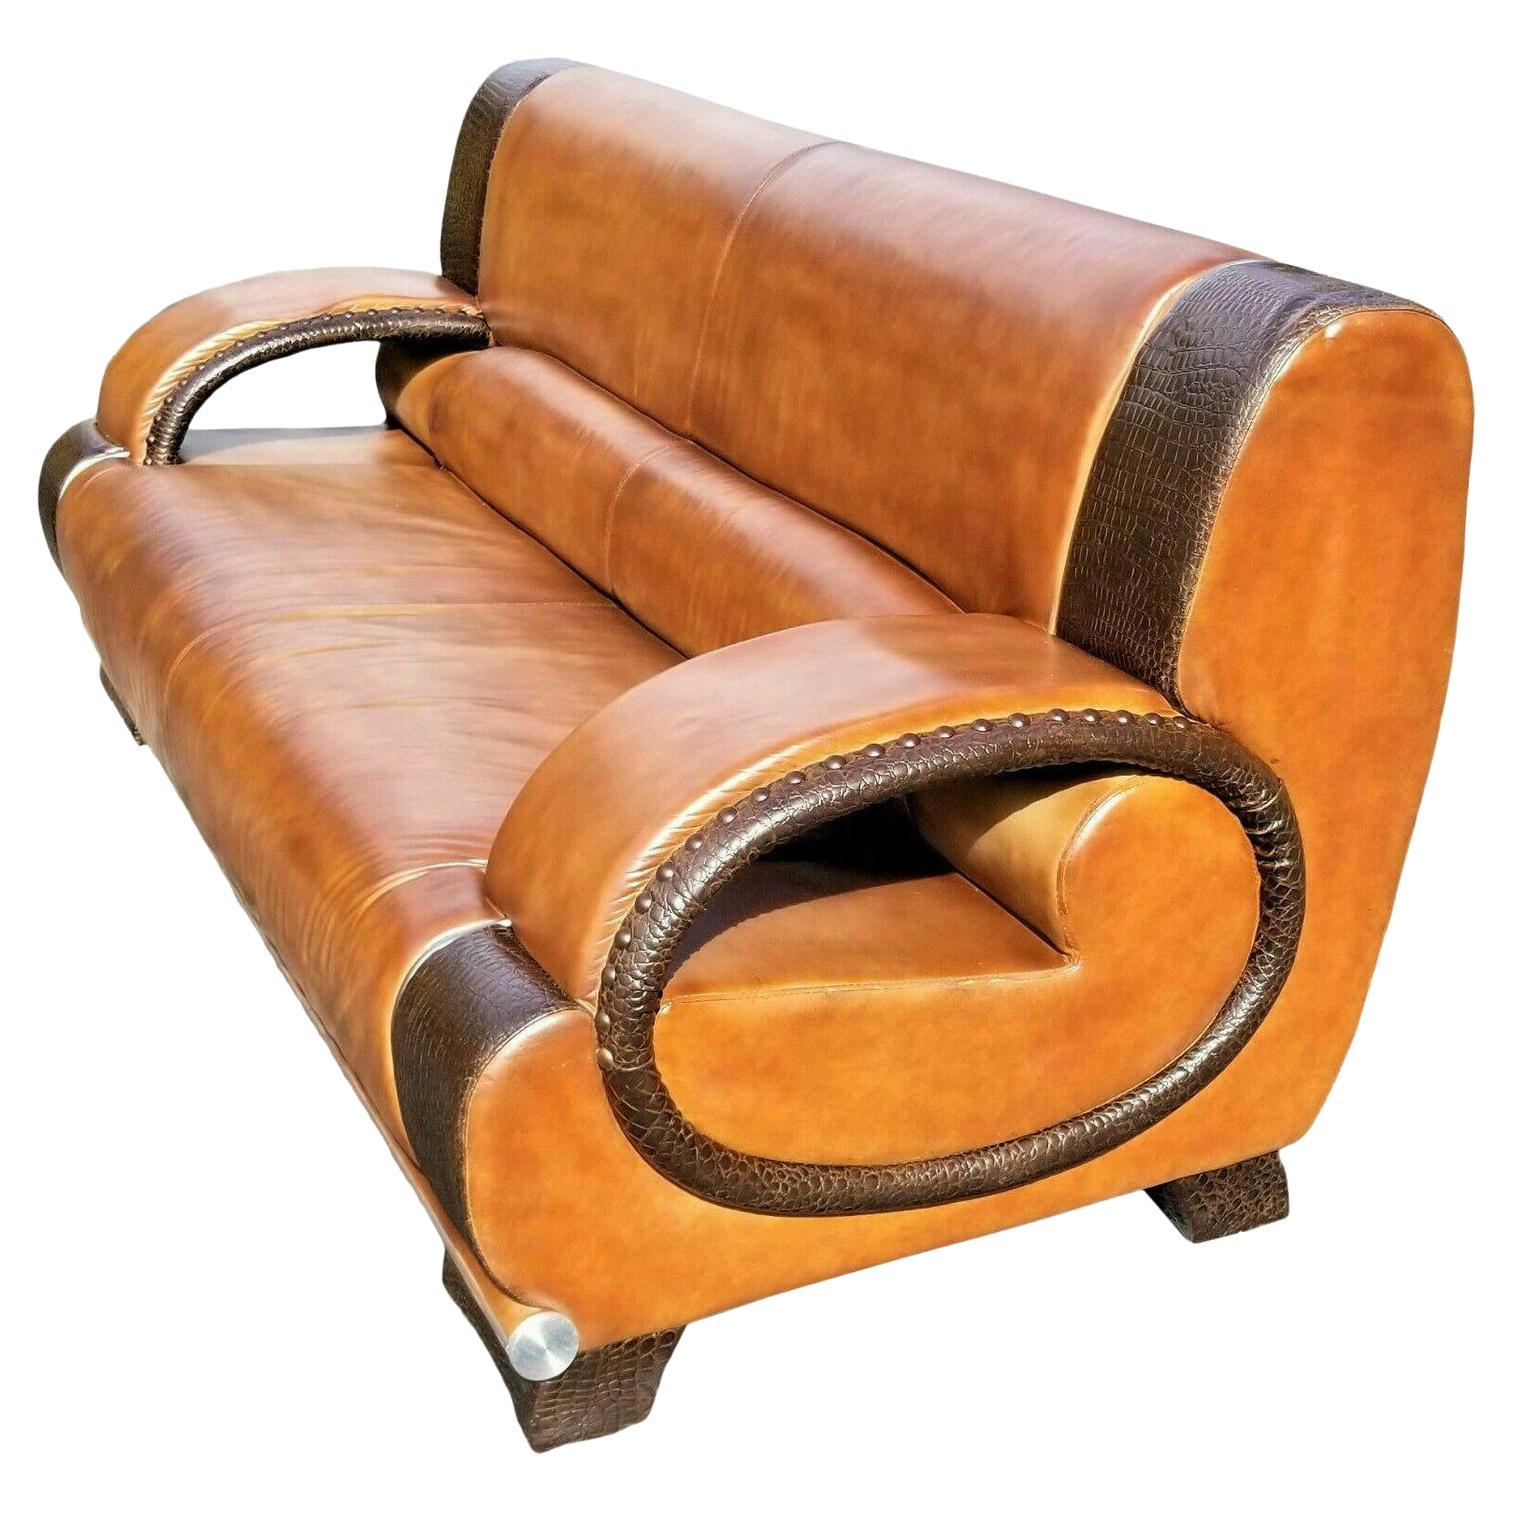 Italian Custom Made Leather & Alligator Skin Sofa